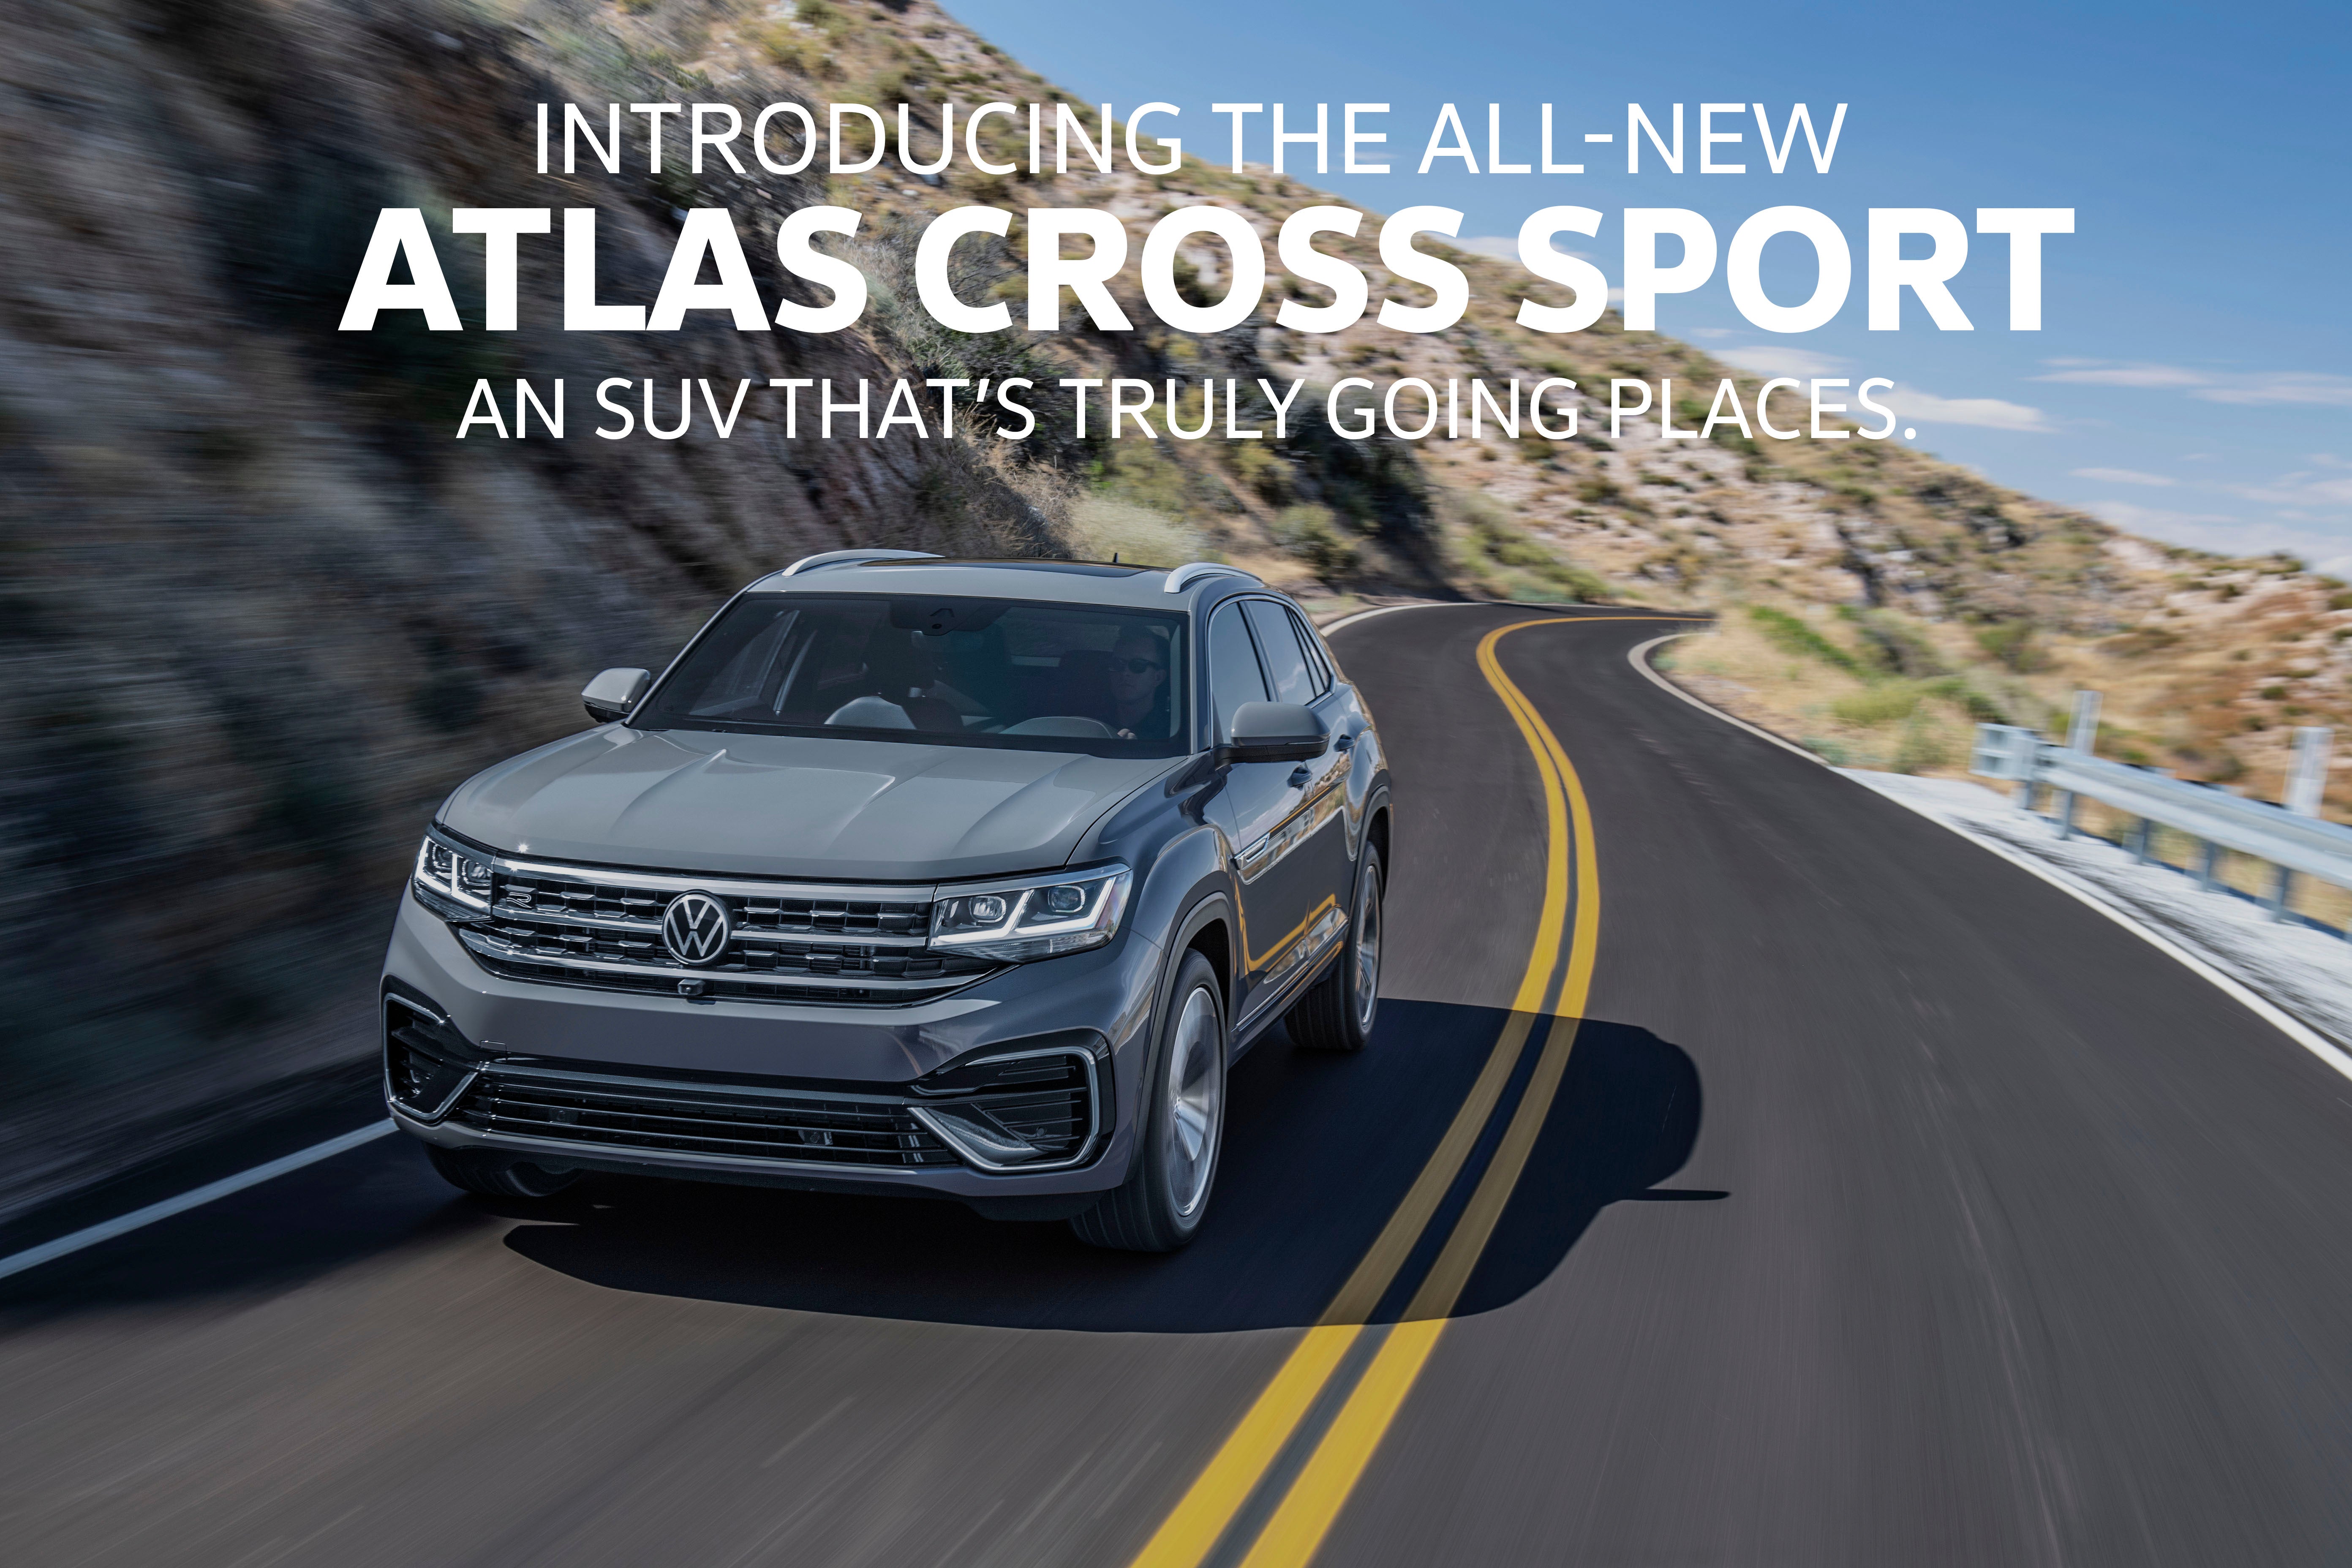 Atlas Cross Sport